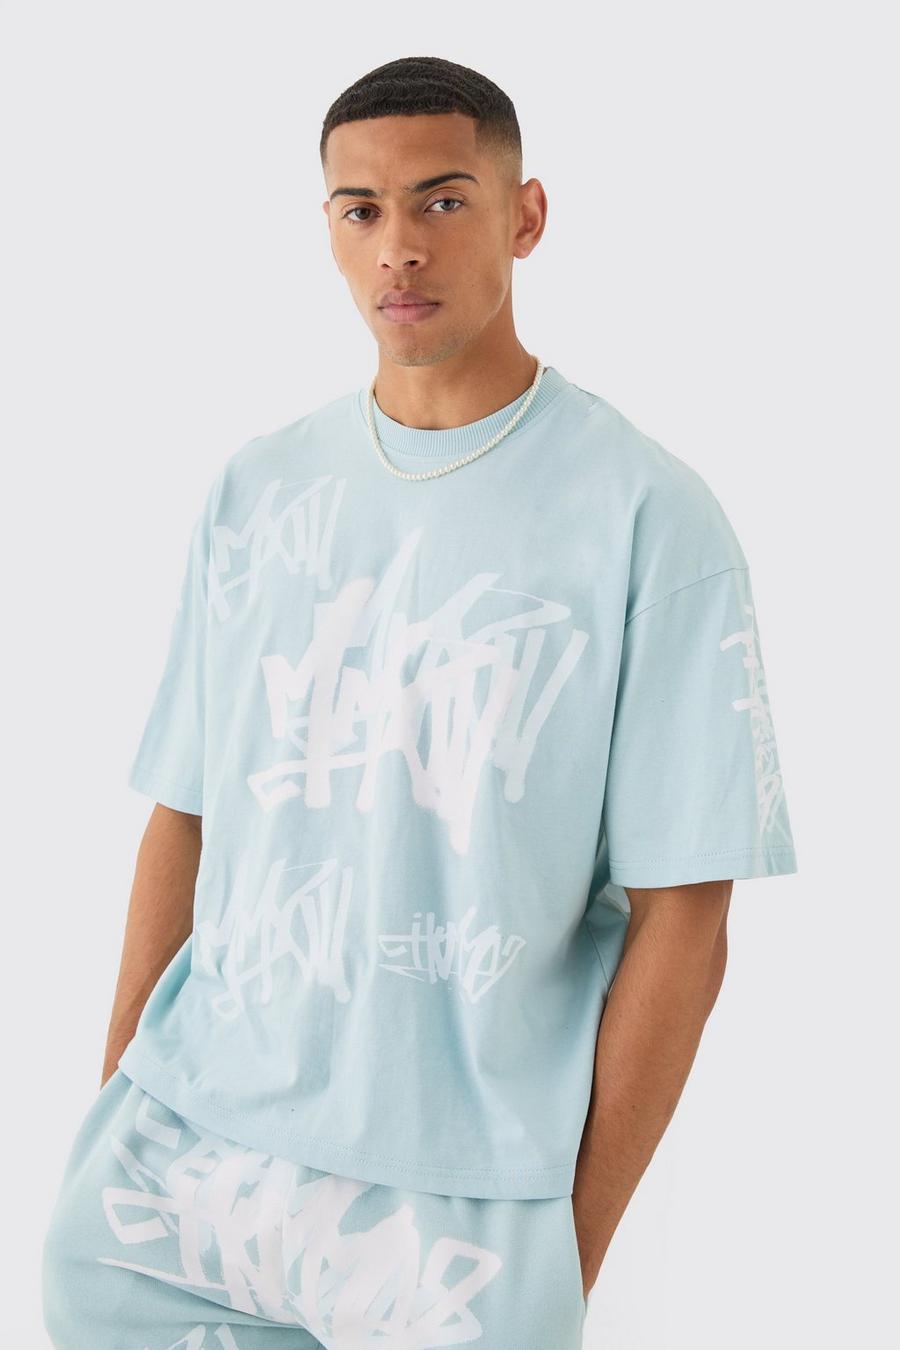 Blue Boxy Graffiti Printed T-shirt